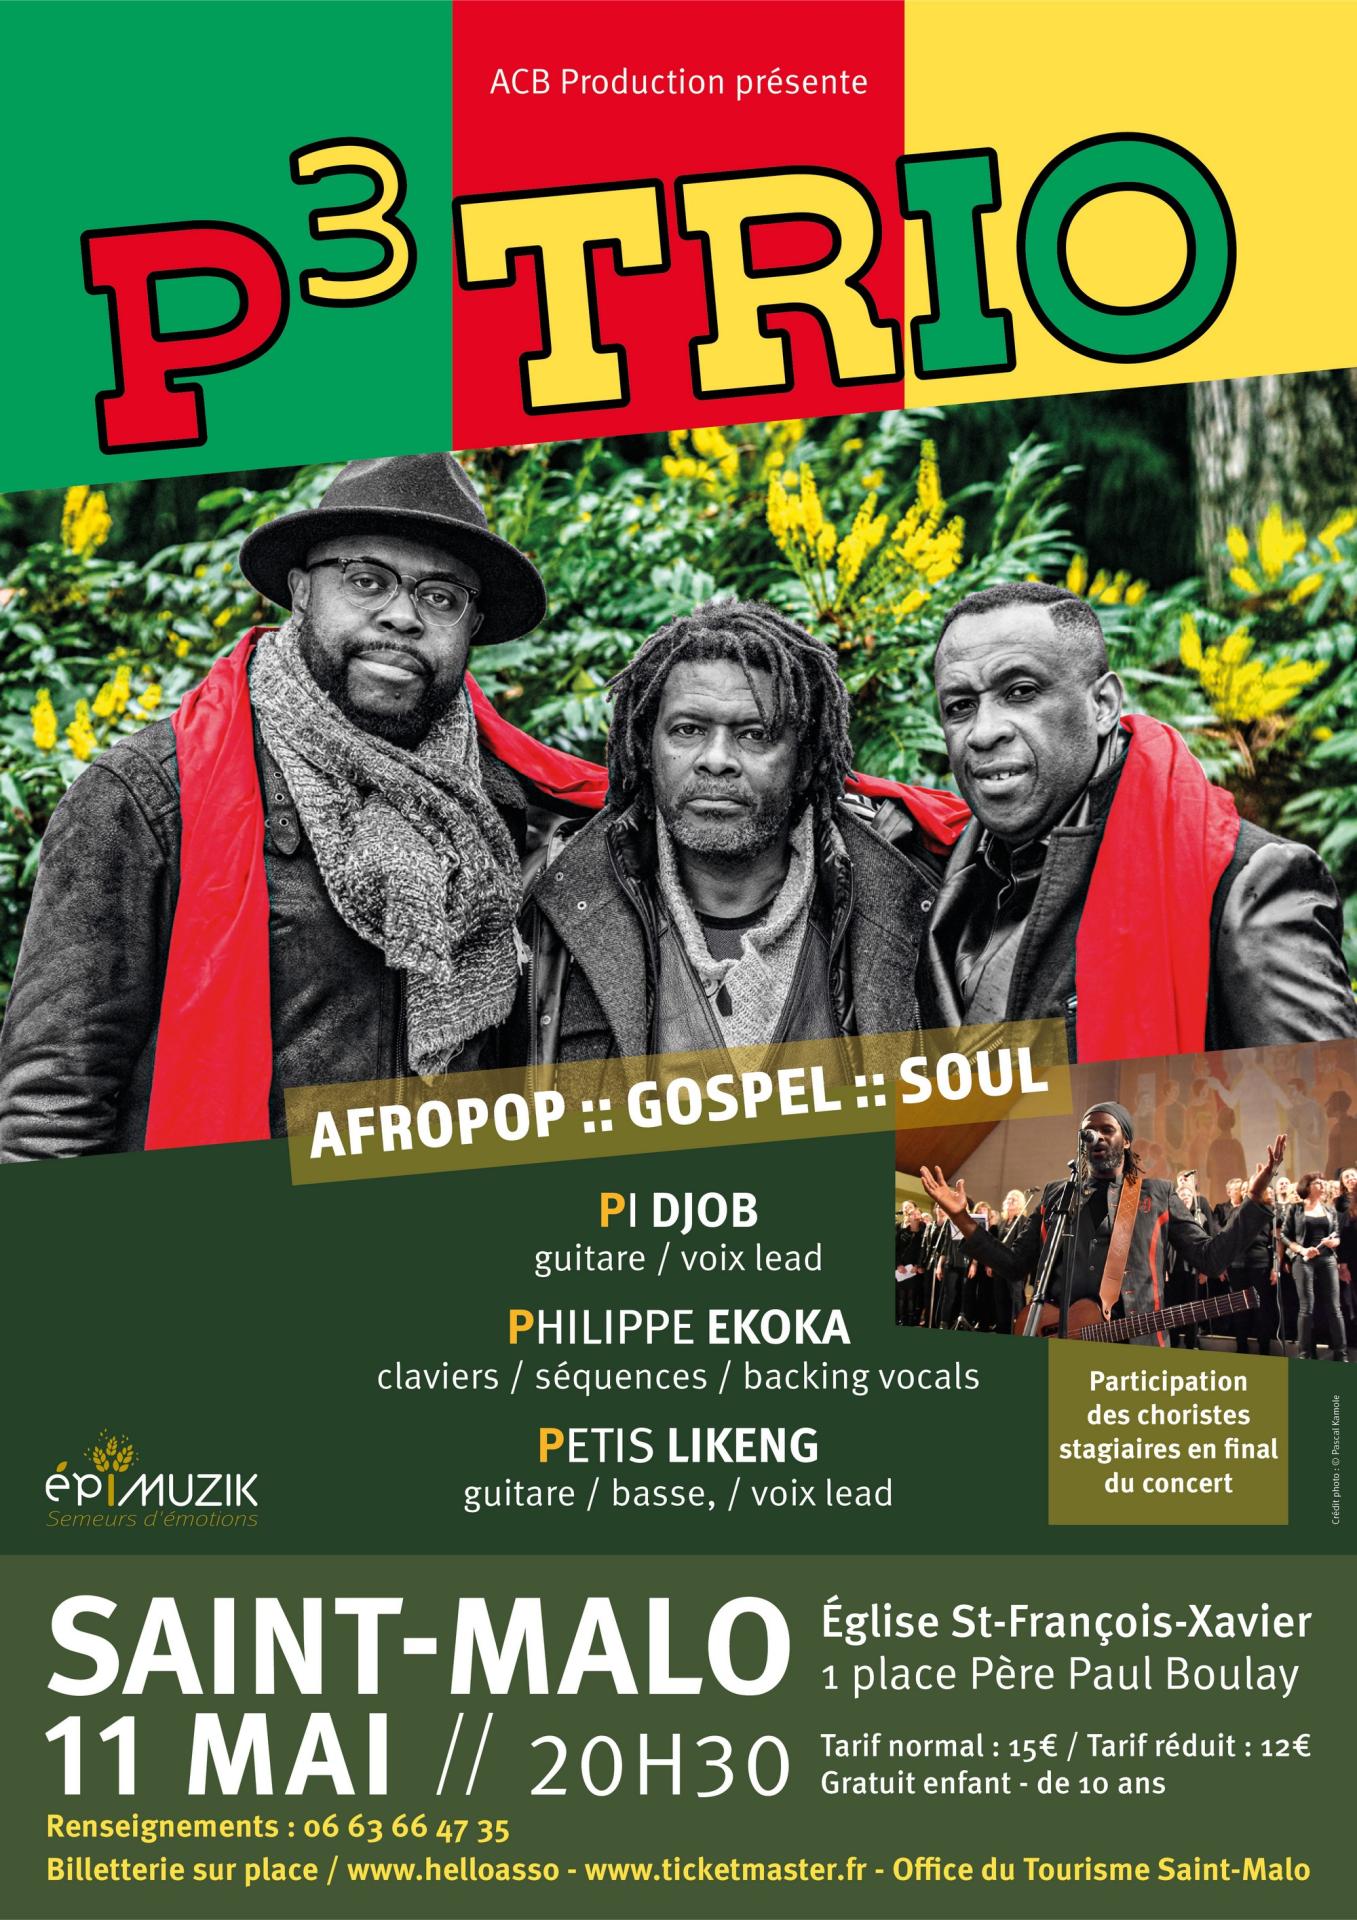 P3 trio affiche concert 11 mai saint malo new 002 